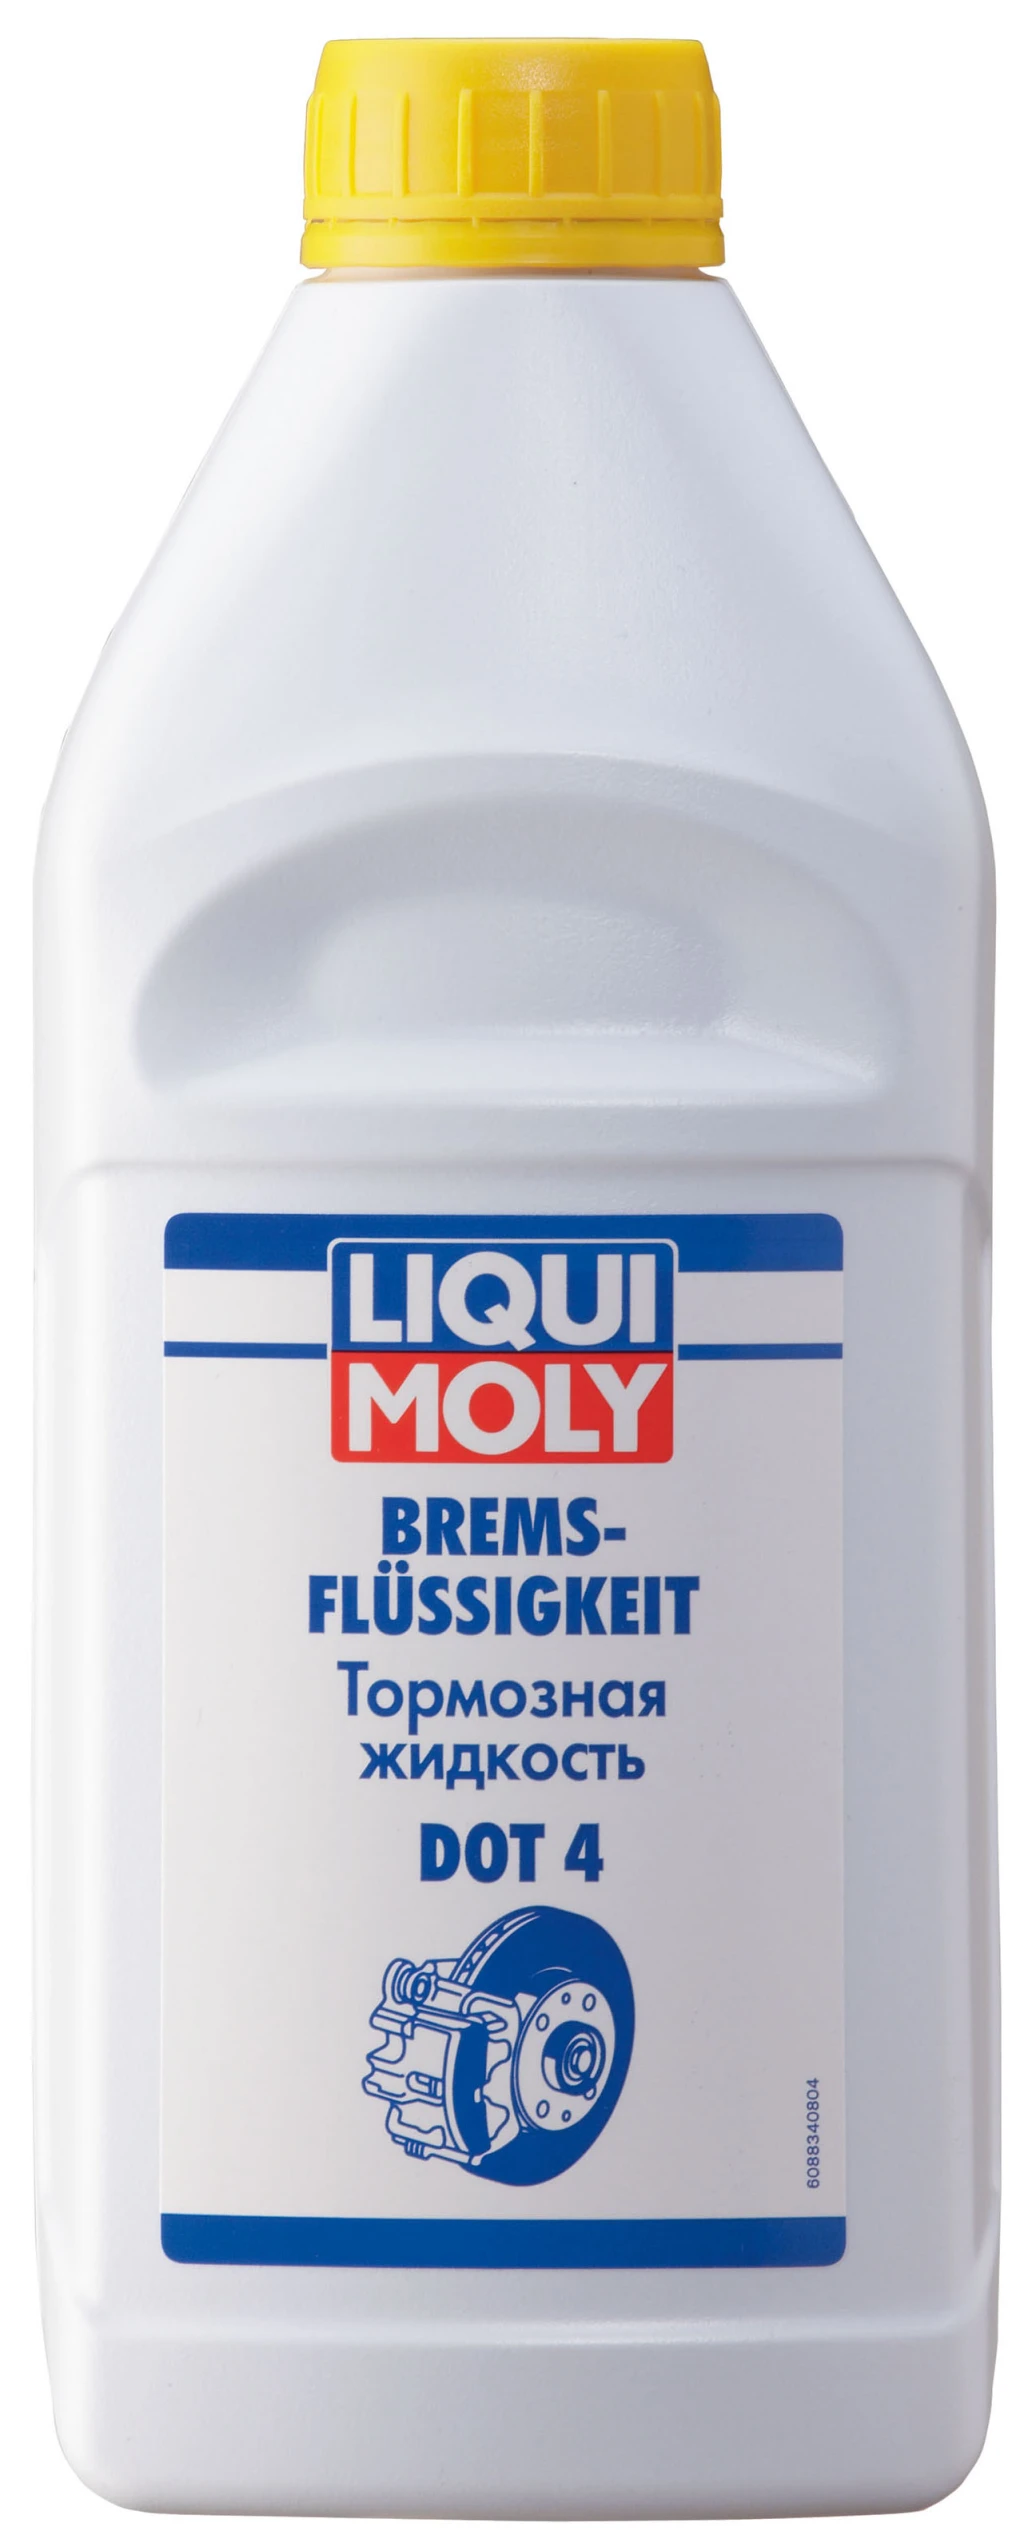 Тормозная жидкость Liqui Moly Bremsflussigkeit DOT 4 1 л